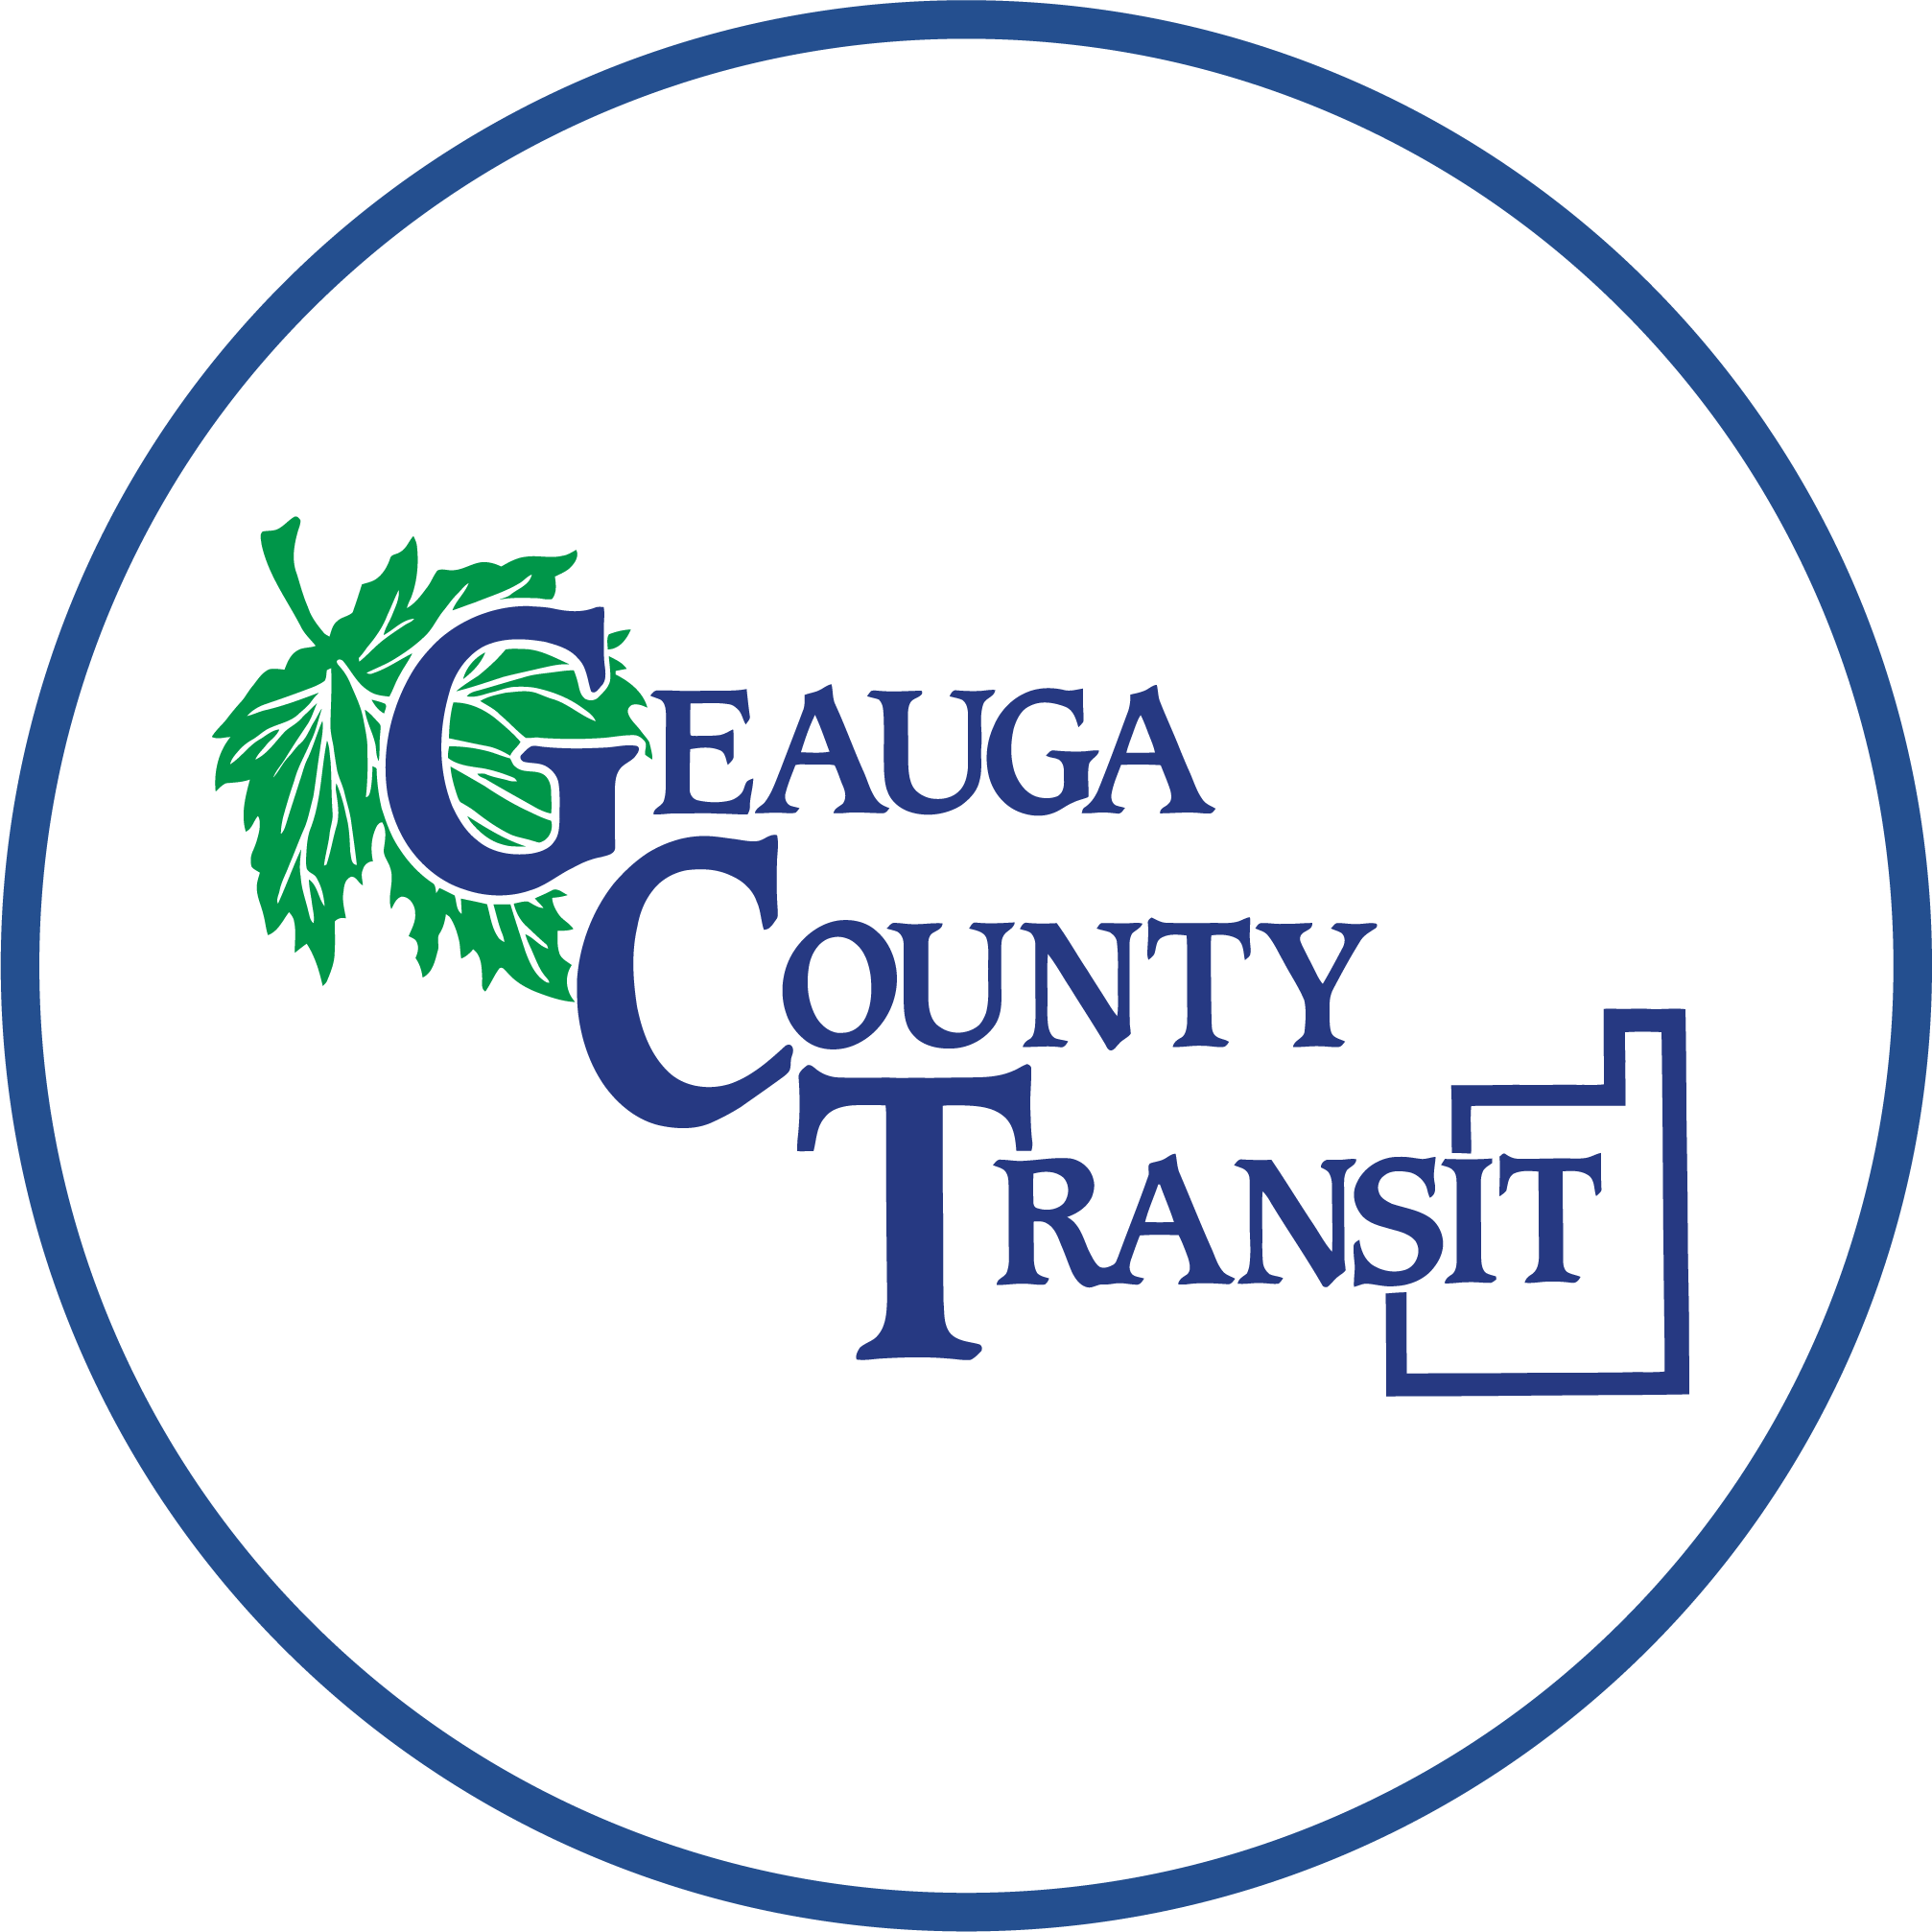 Geauga County Transit logo